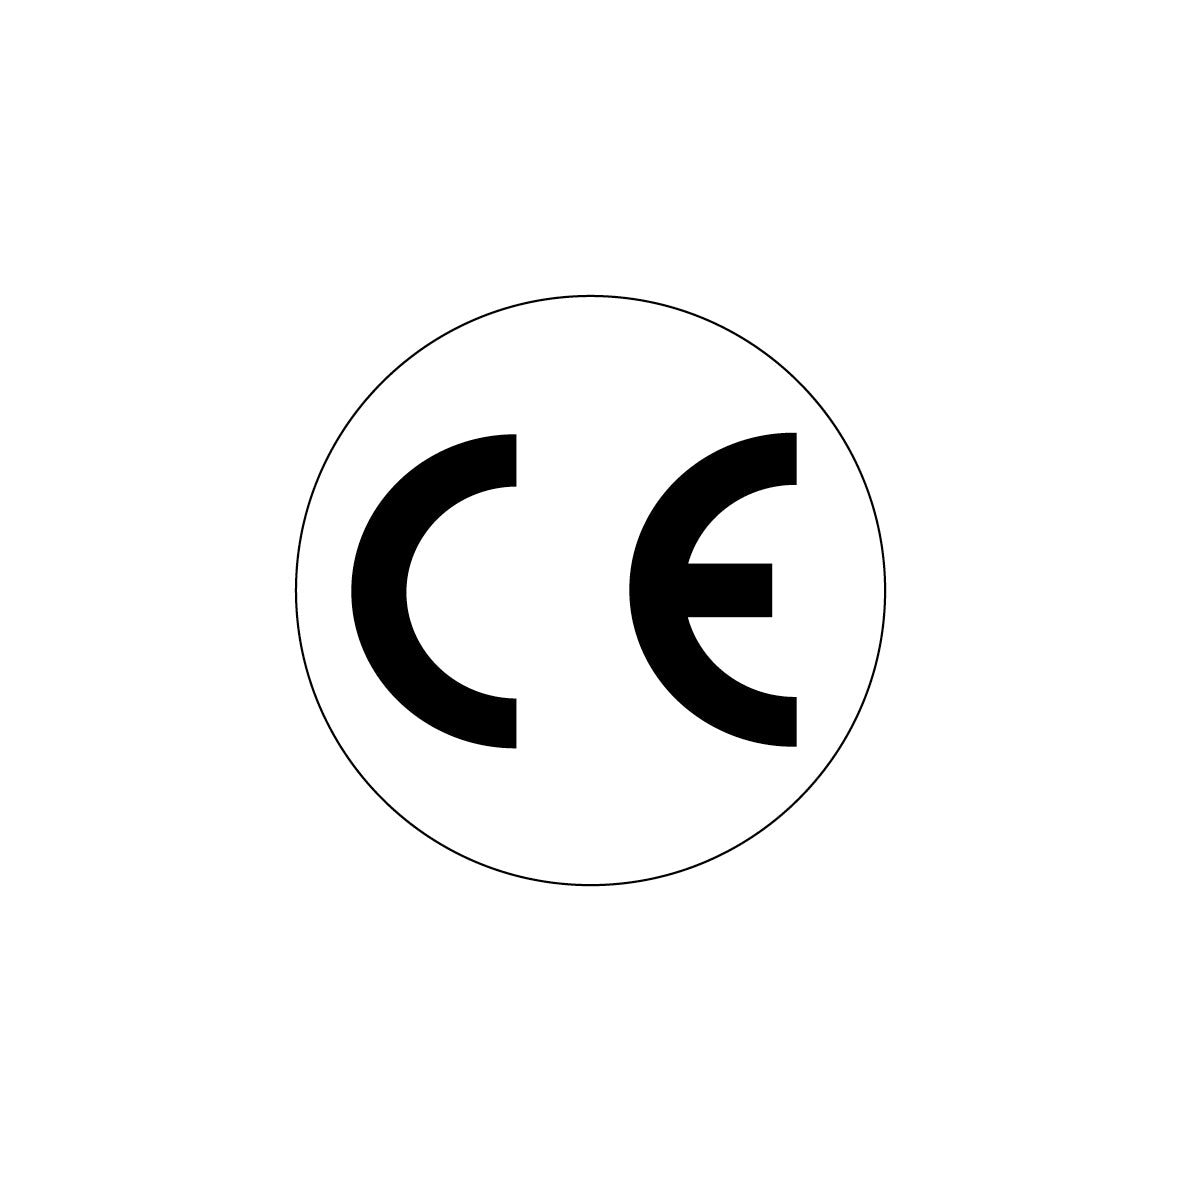 CE-Zeichen, 4.0062, D =16 mm, Schrifthöhe 10 mm, FO mit Laminat, auf Bogen = 25 Stk., weiss/schwarz, Einheit 100 Stk.